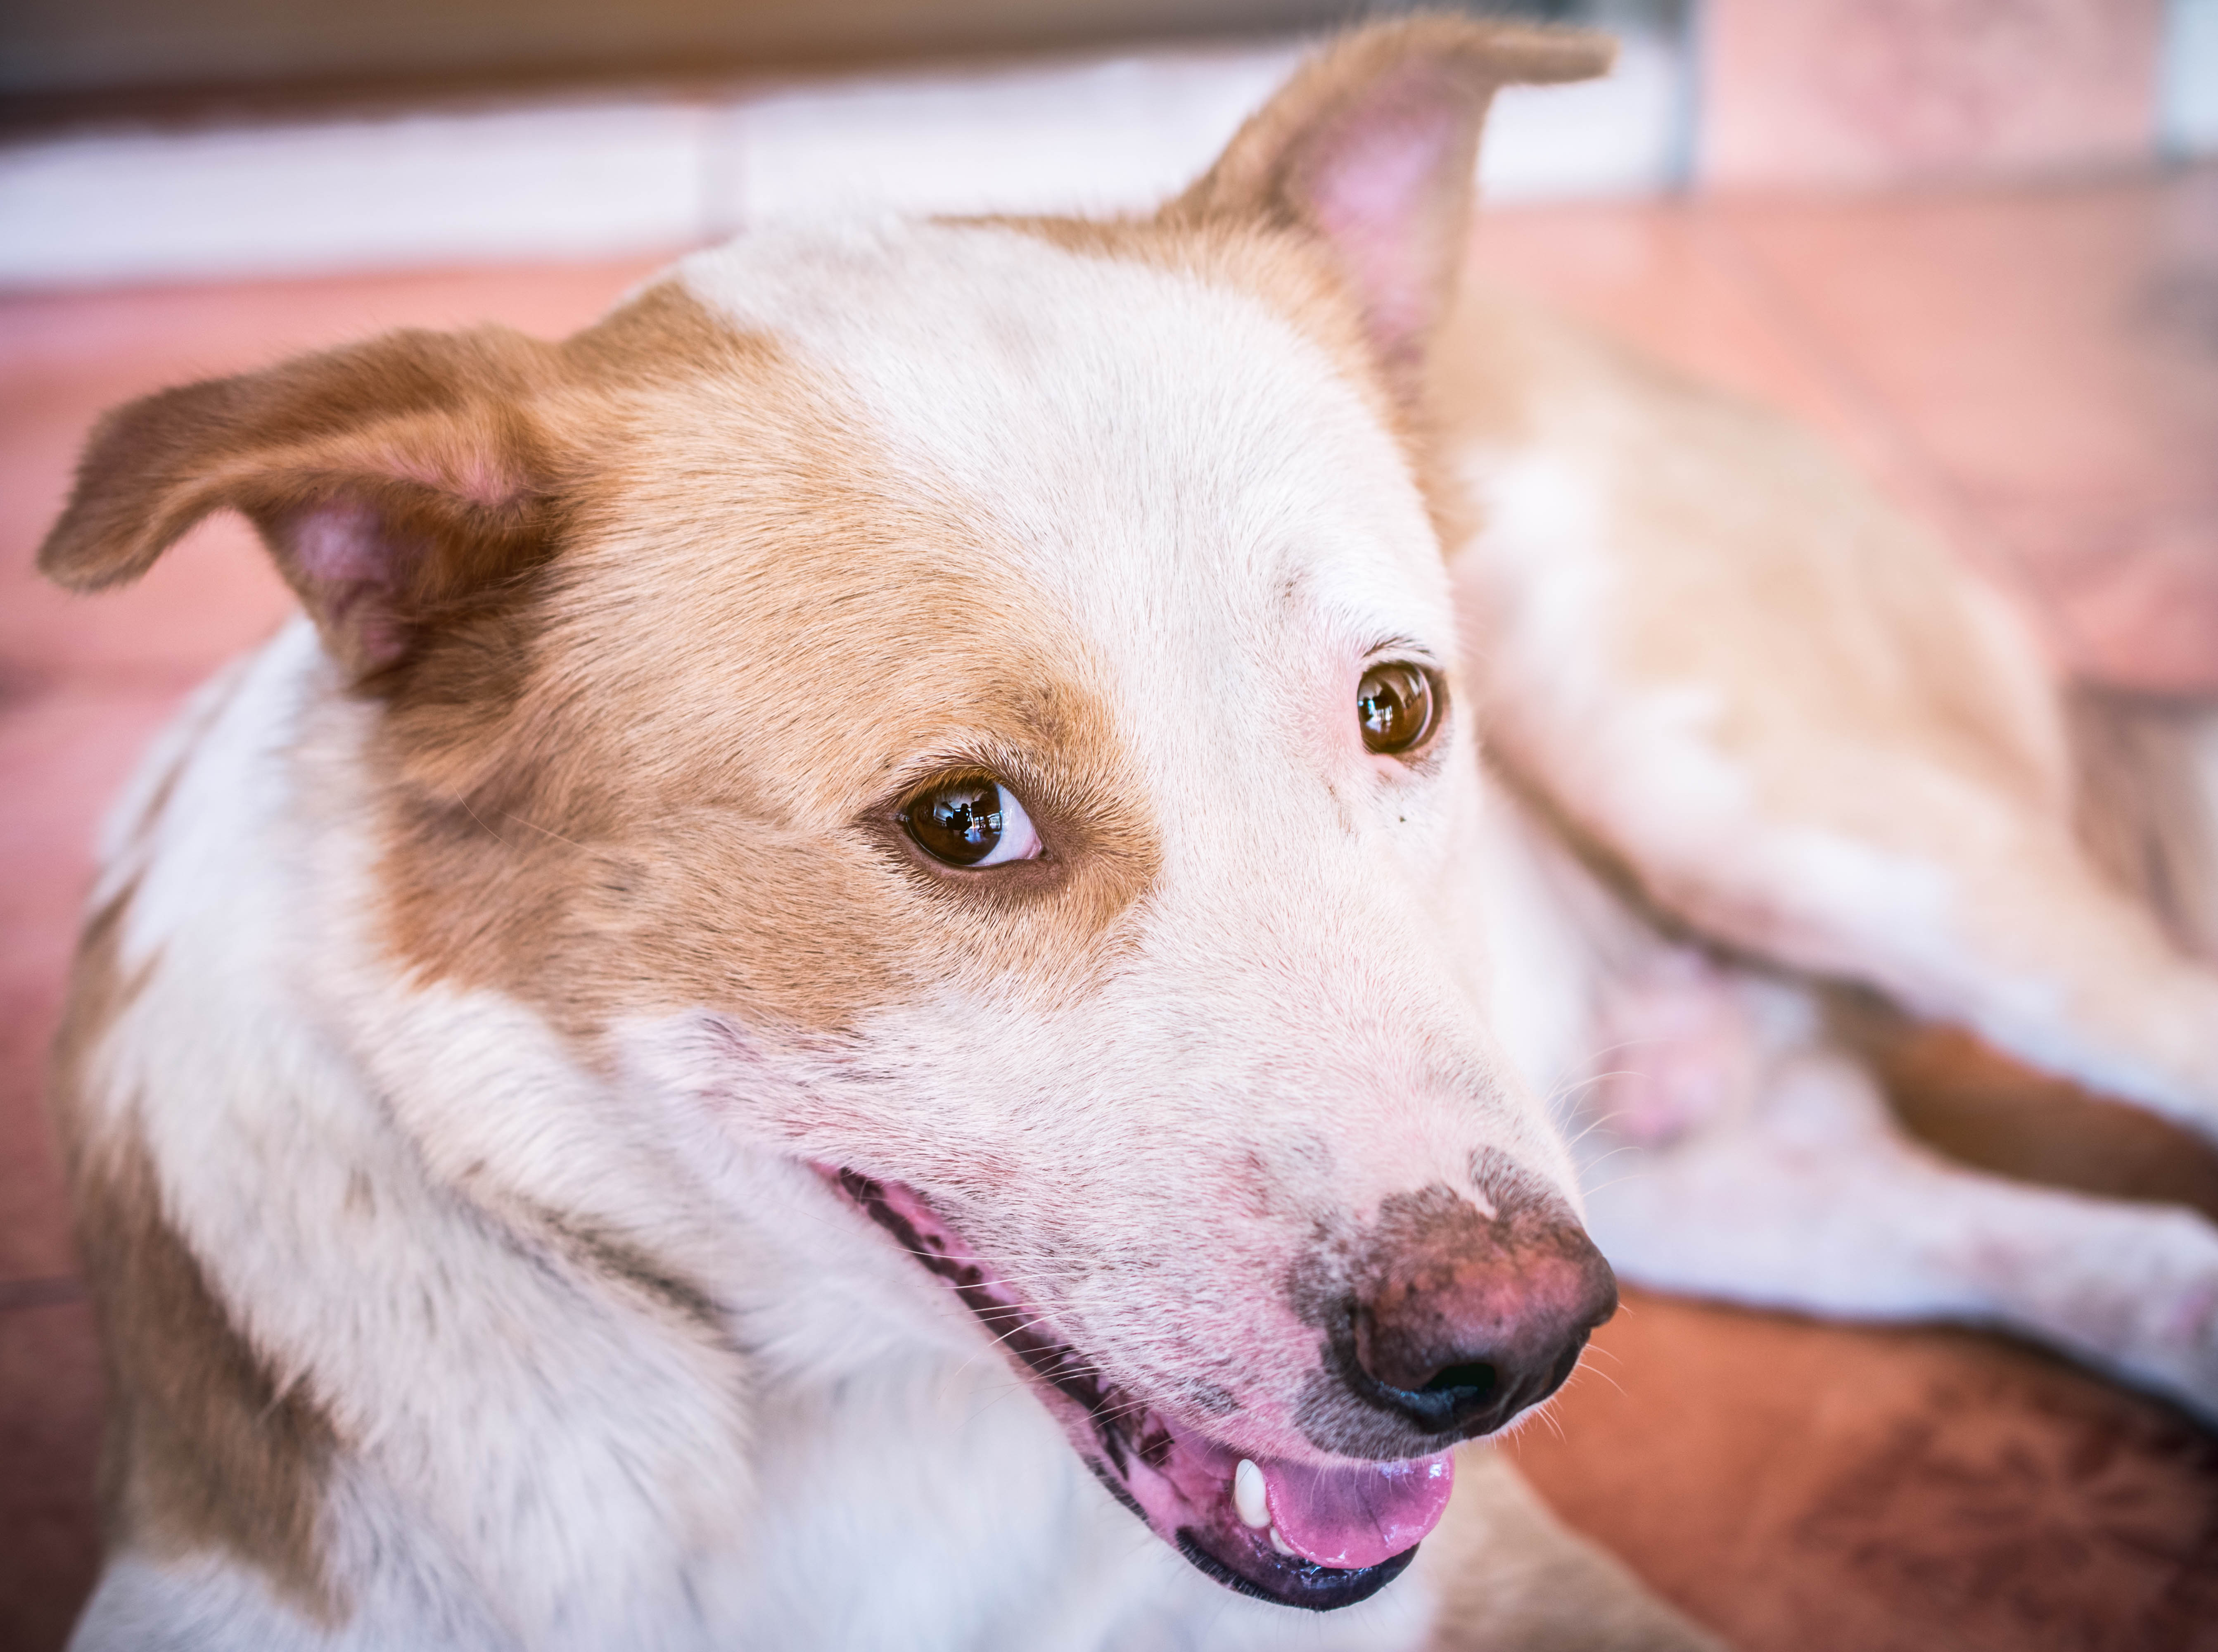 Vacunación es vital para prevenir la rabia en perros y gatos. (Foto Prensa Libre: Shutterstock)